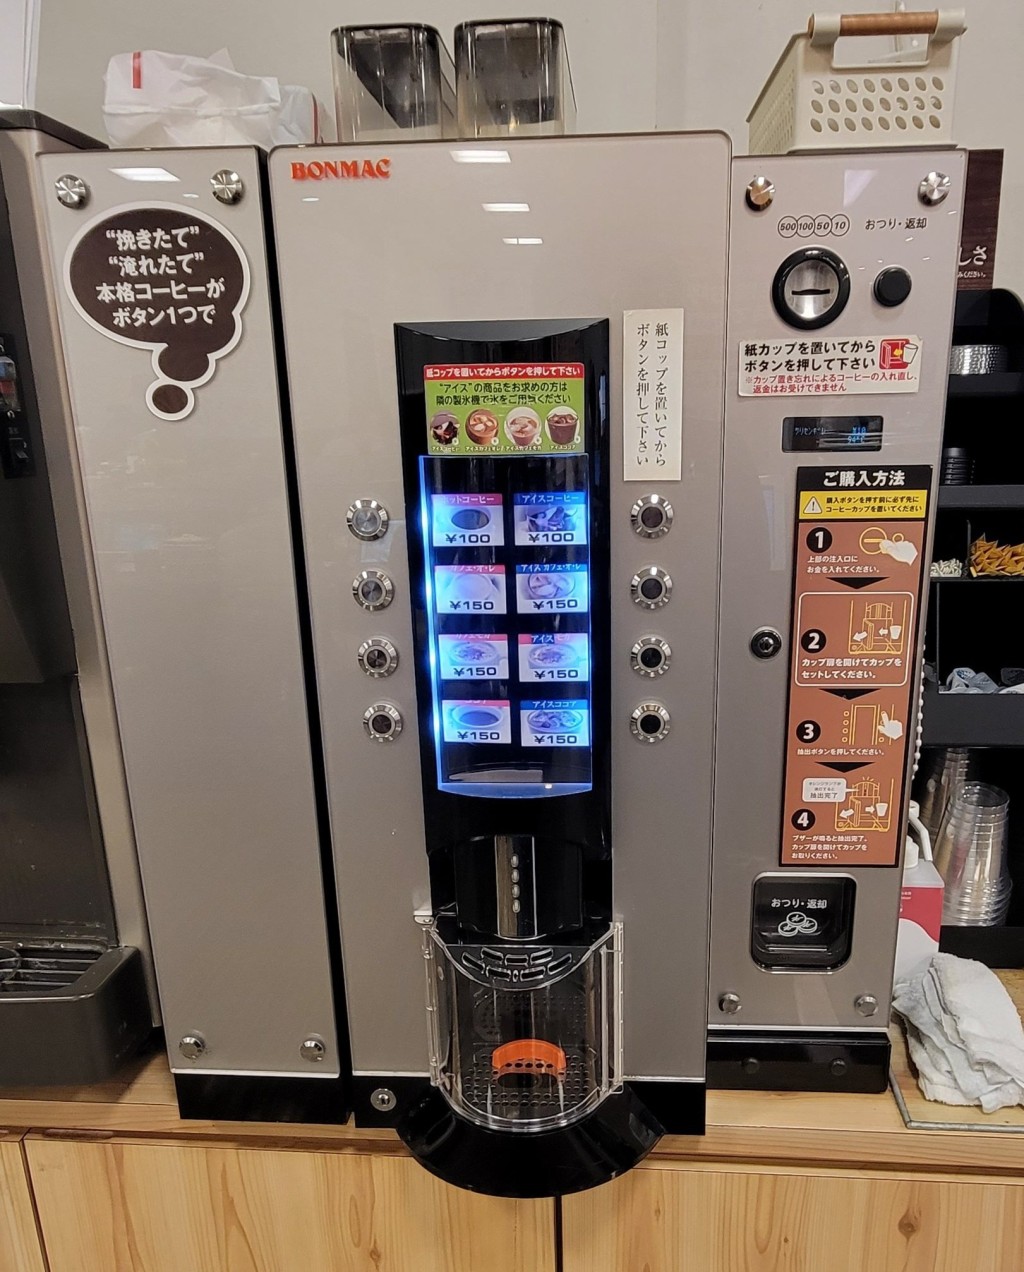 日本便利店的自助咖啡機。 X